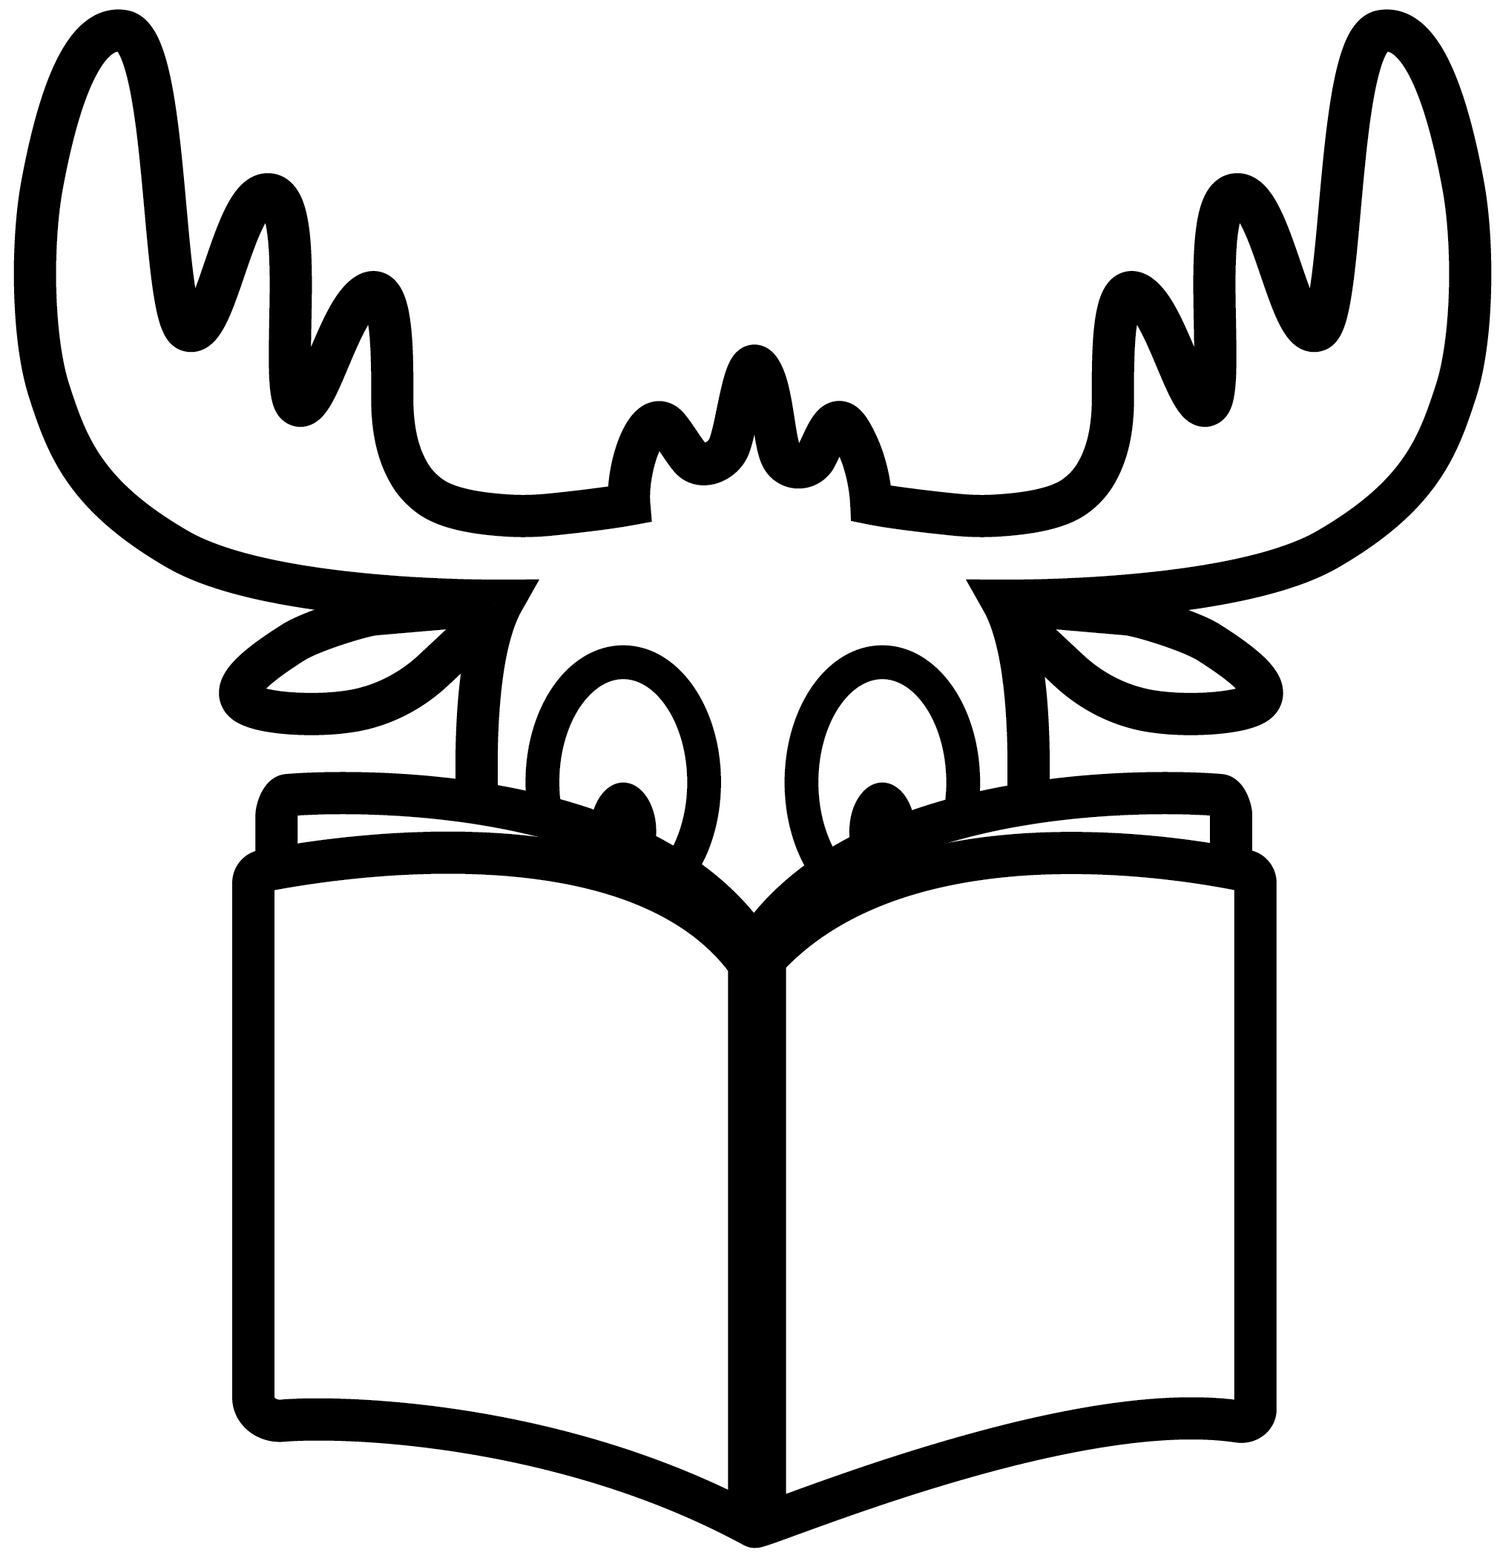 Mythic Moose Book Club